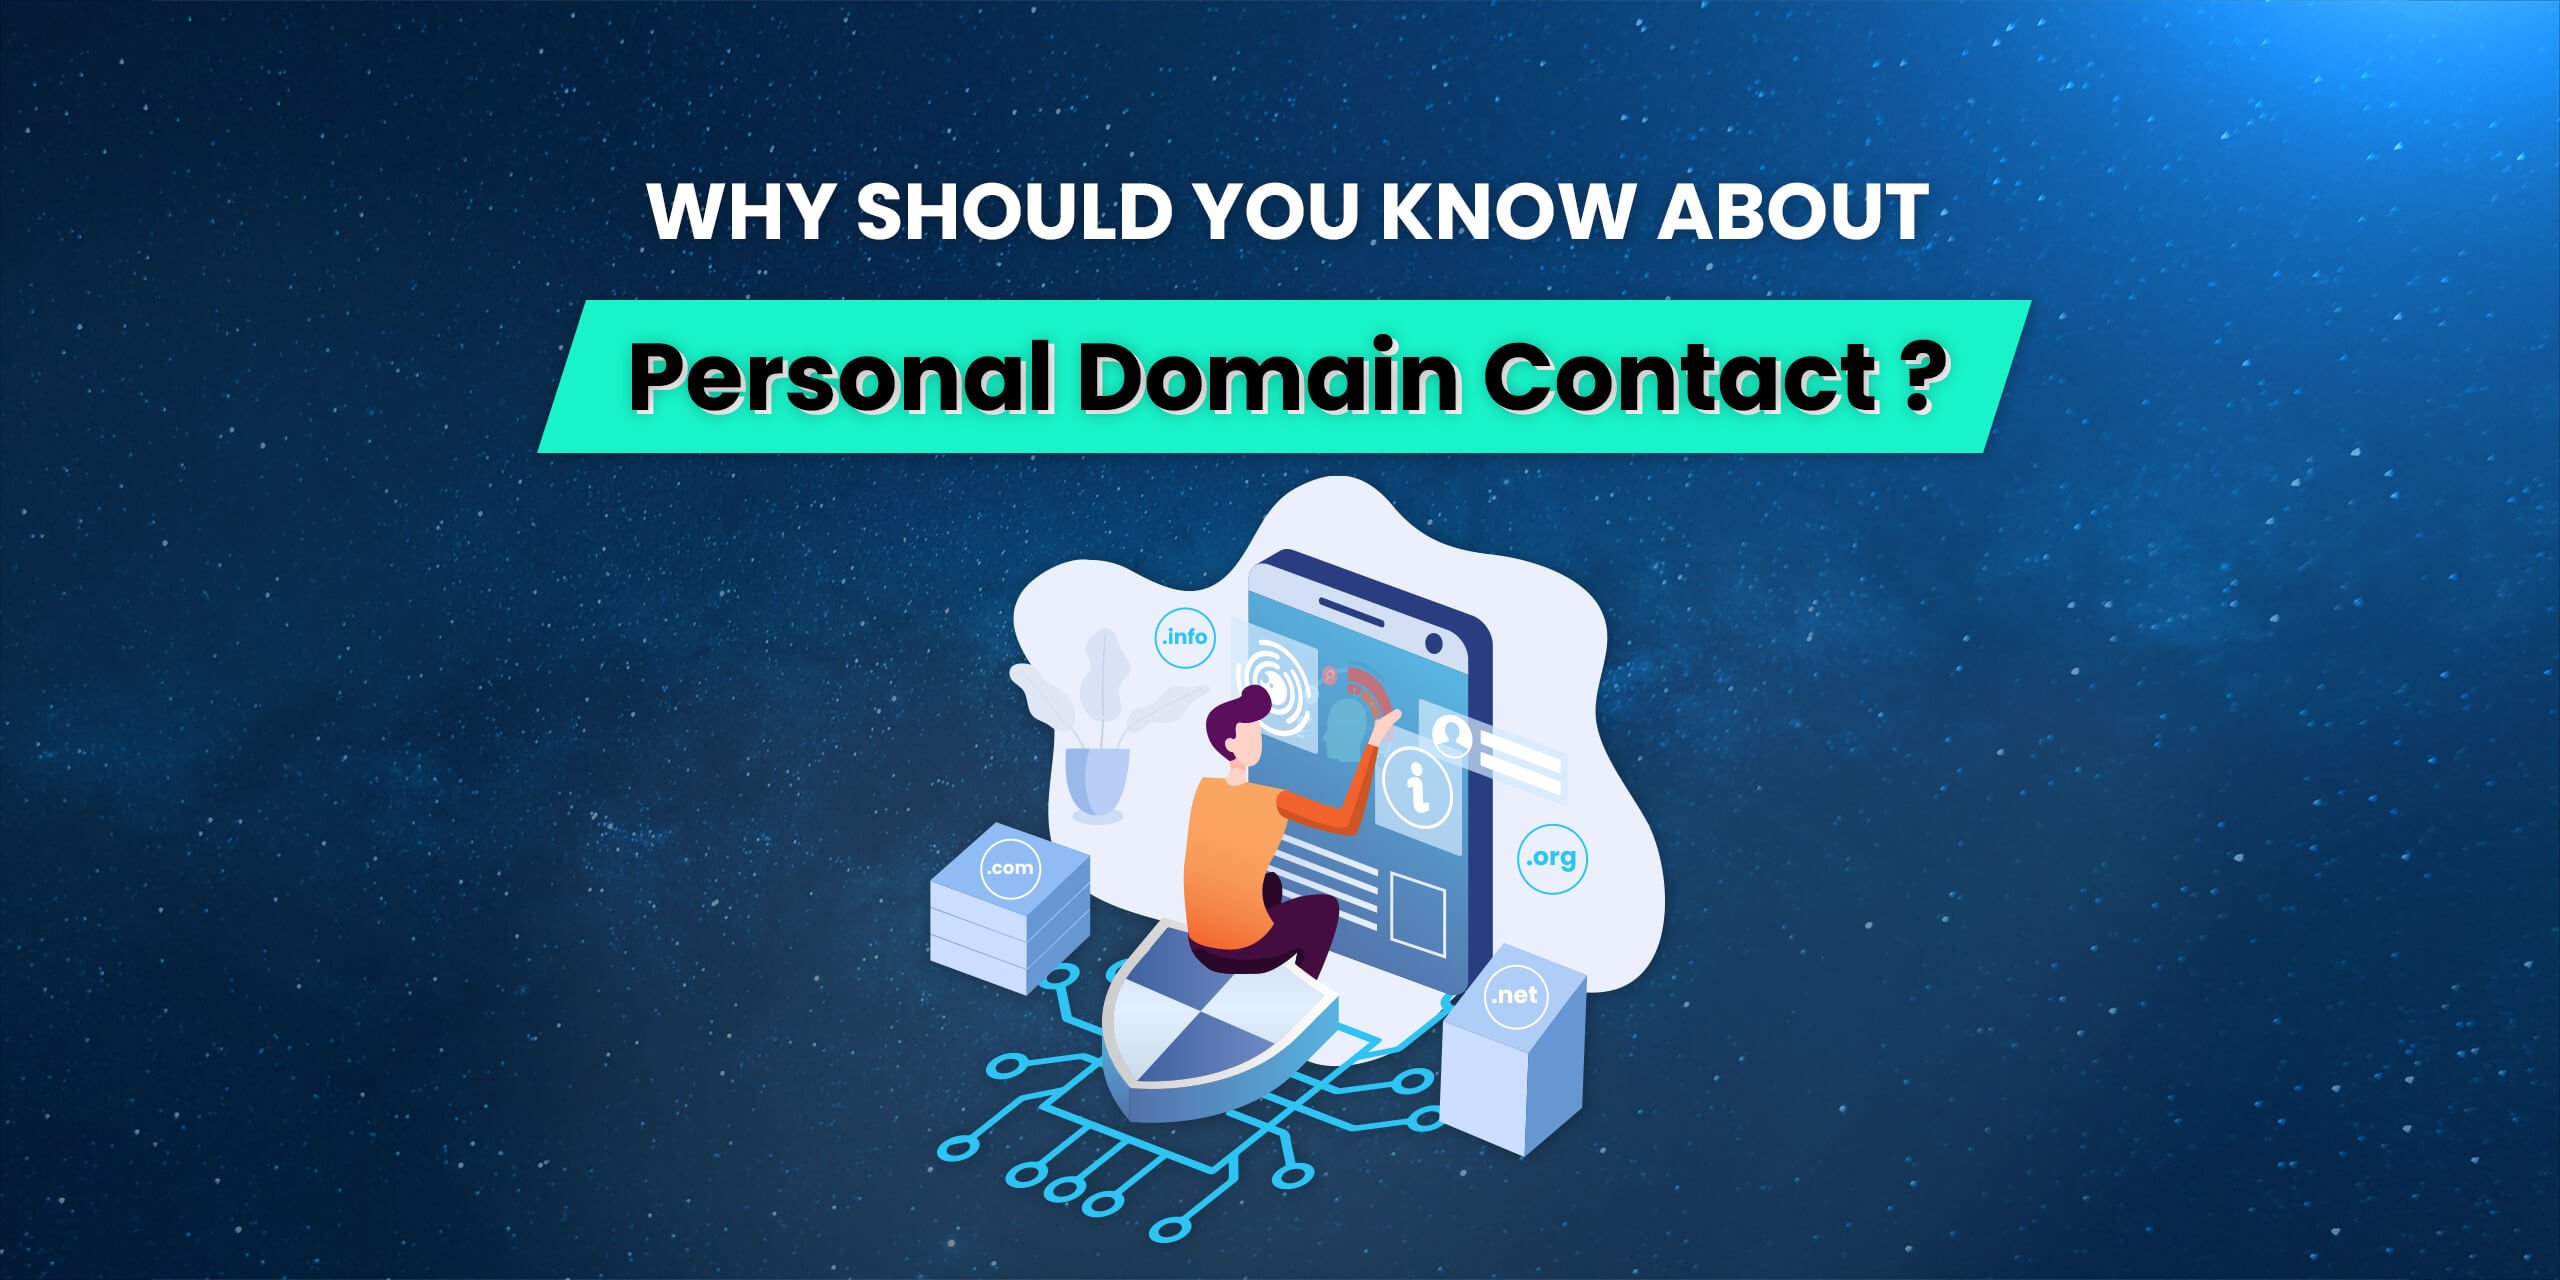 ហេតុអ្វីបានជាអ្នកគួរដឹងអំពី Personal Domain Contact?